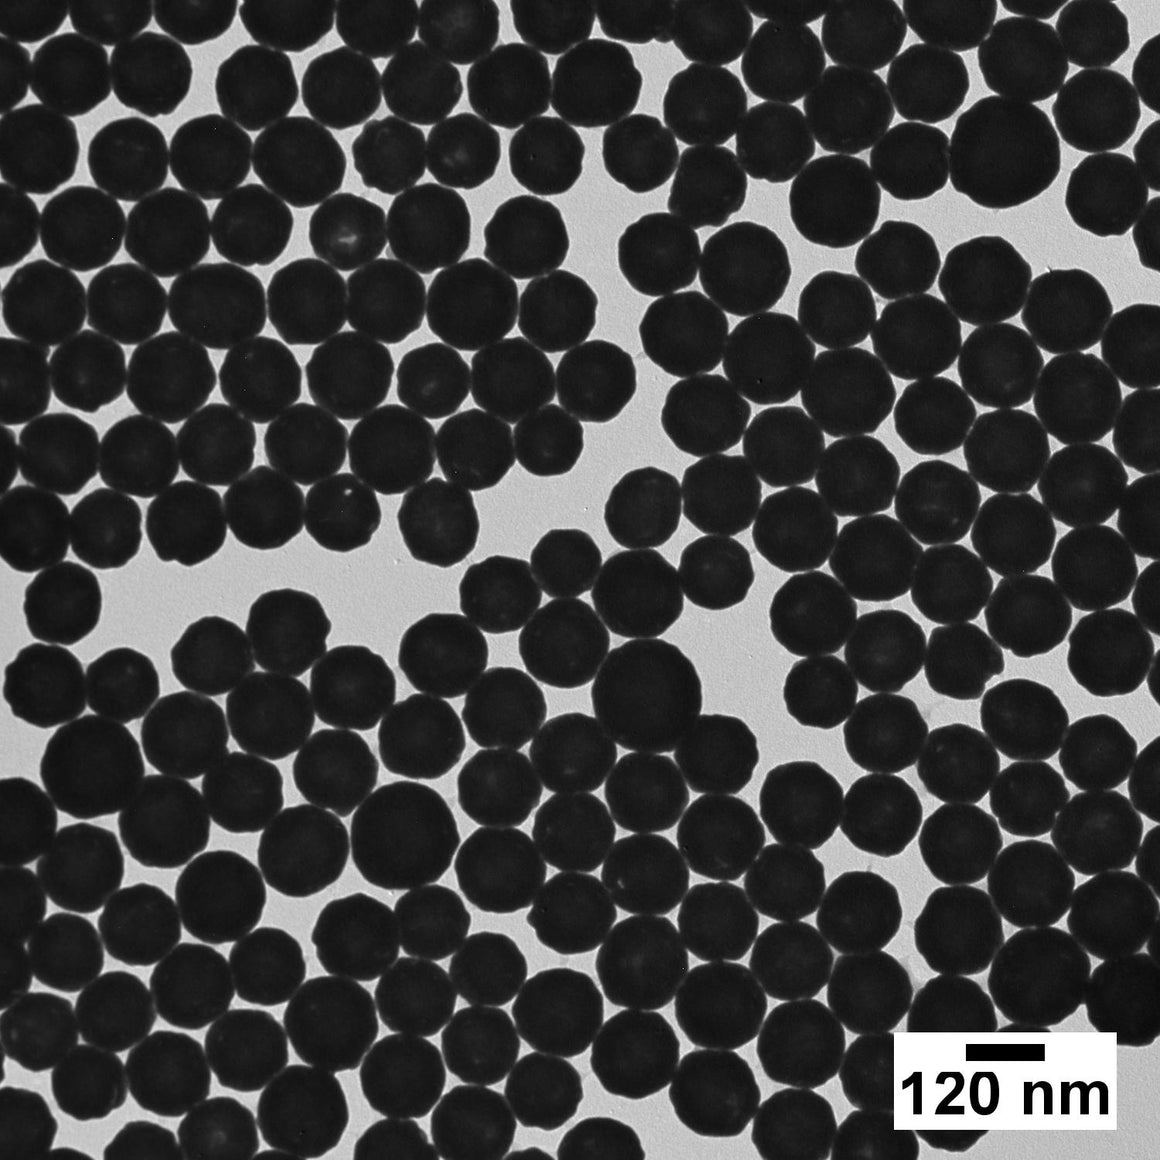 NanoXact Gold Nanoshells – PEG